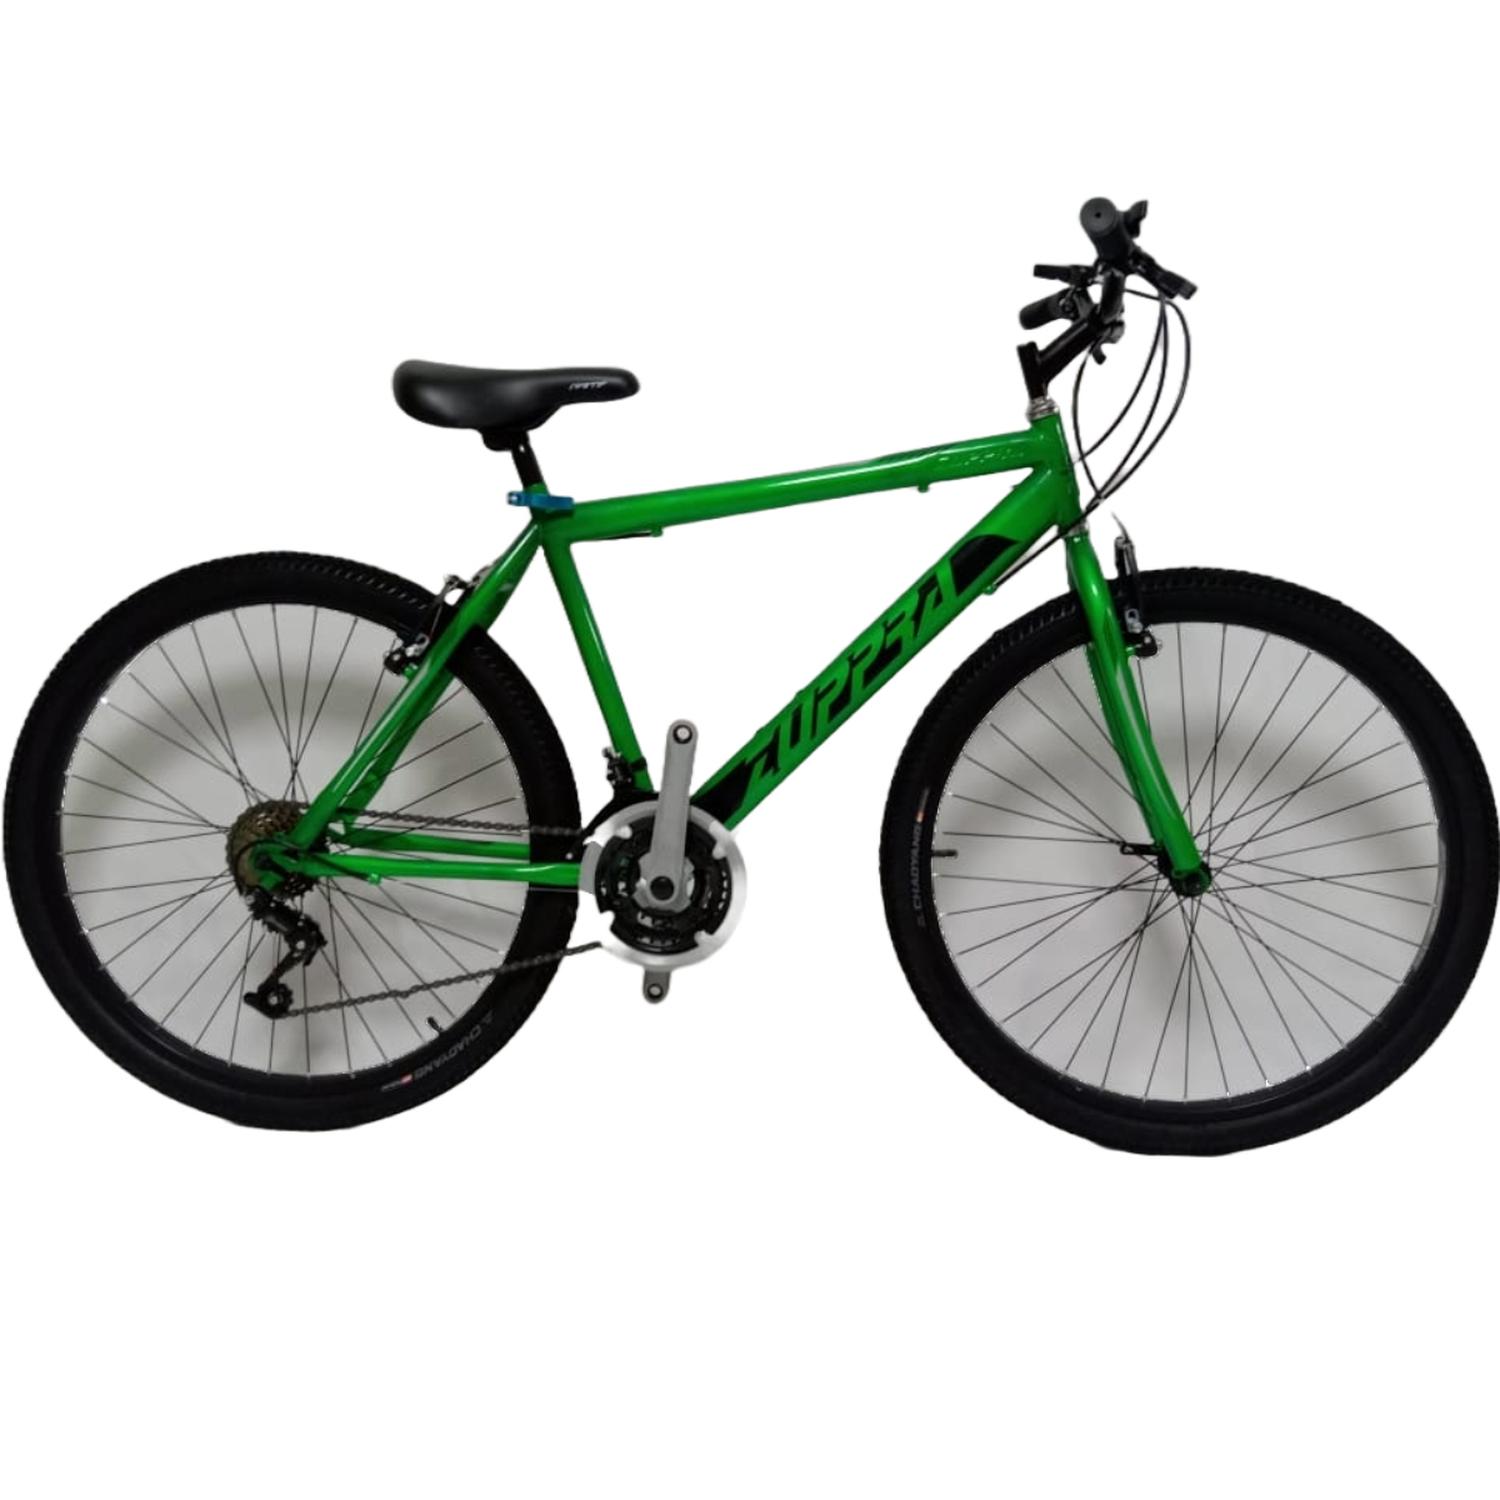 Promoción bicicleta rin 26, bicicleta rin 26 a la venta, bicicleta rin 26  promocional